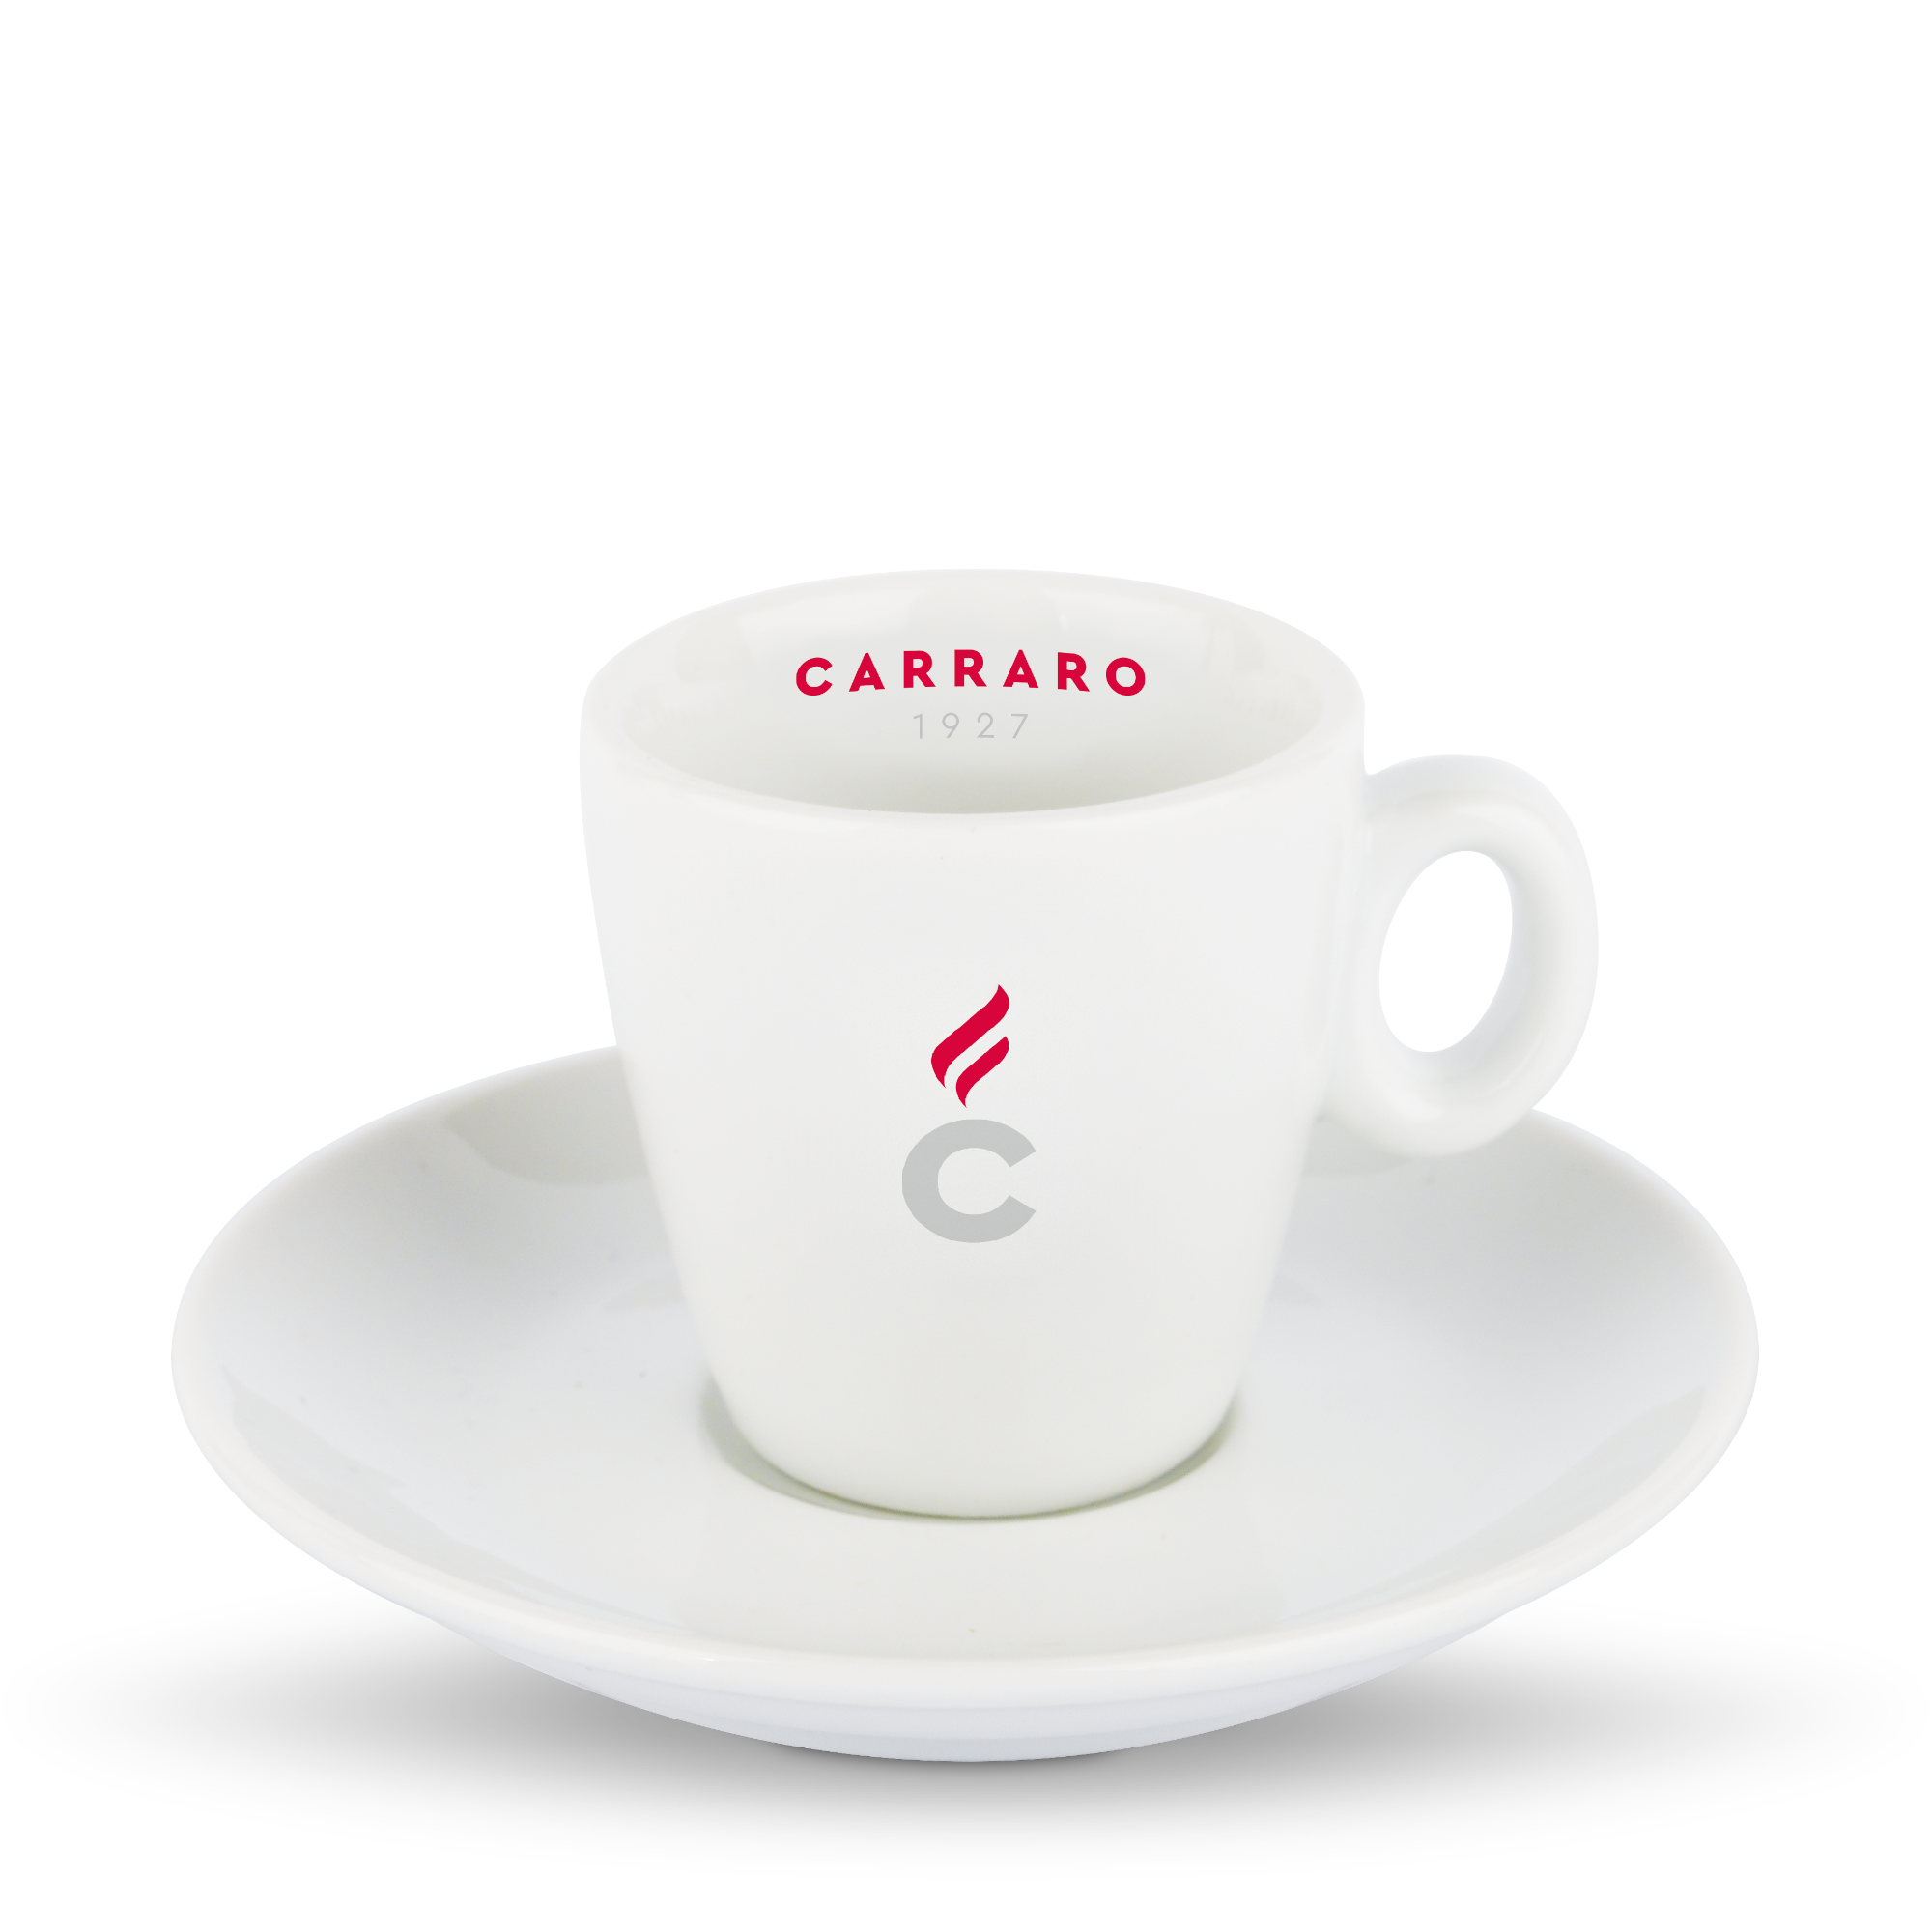 Tasse à espresso porcelaine - Lavazza - El Cafe Shop